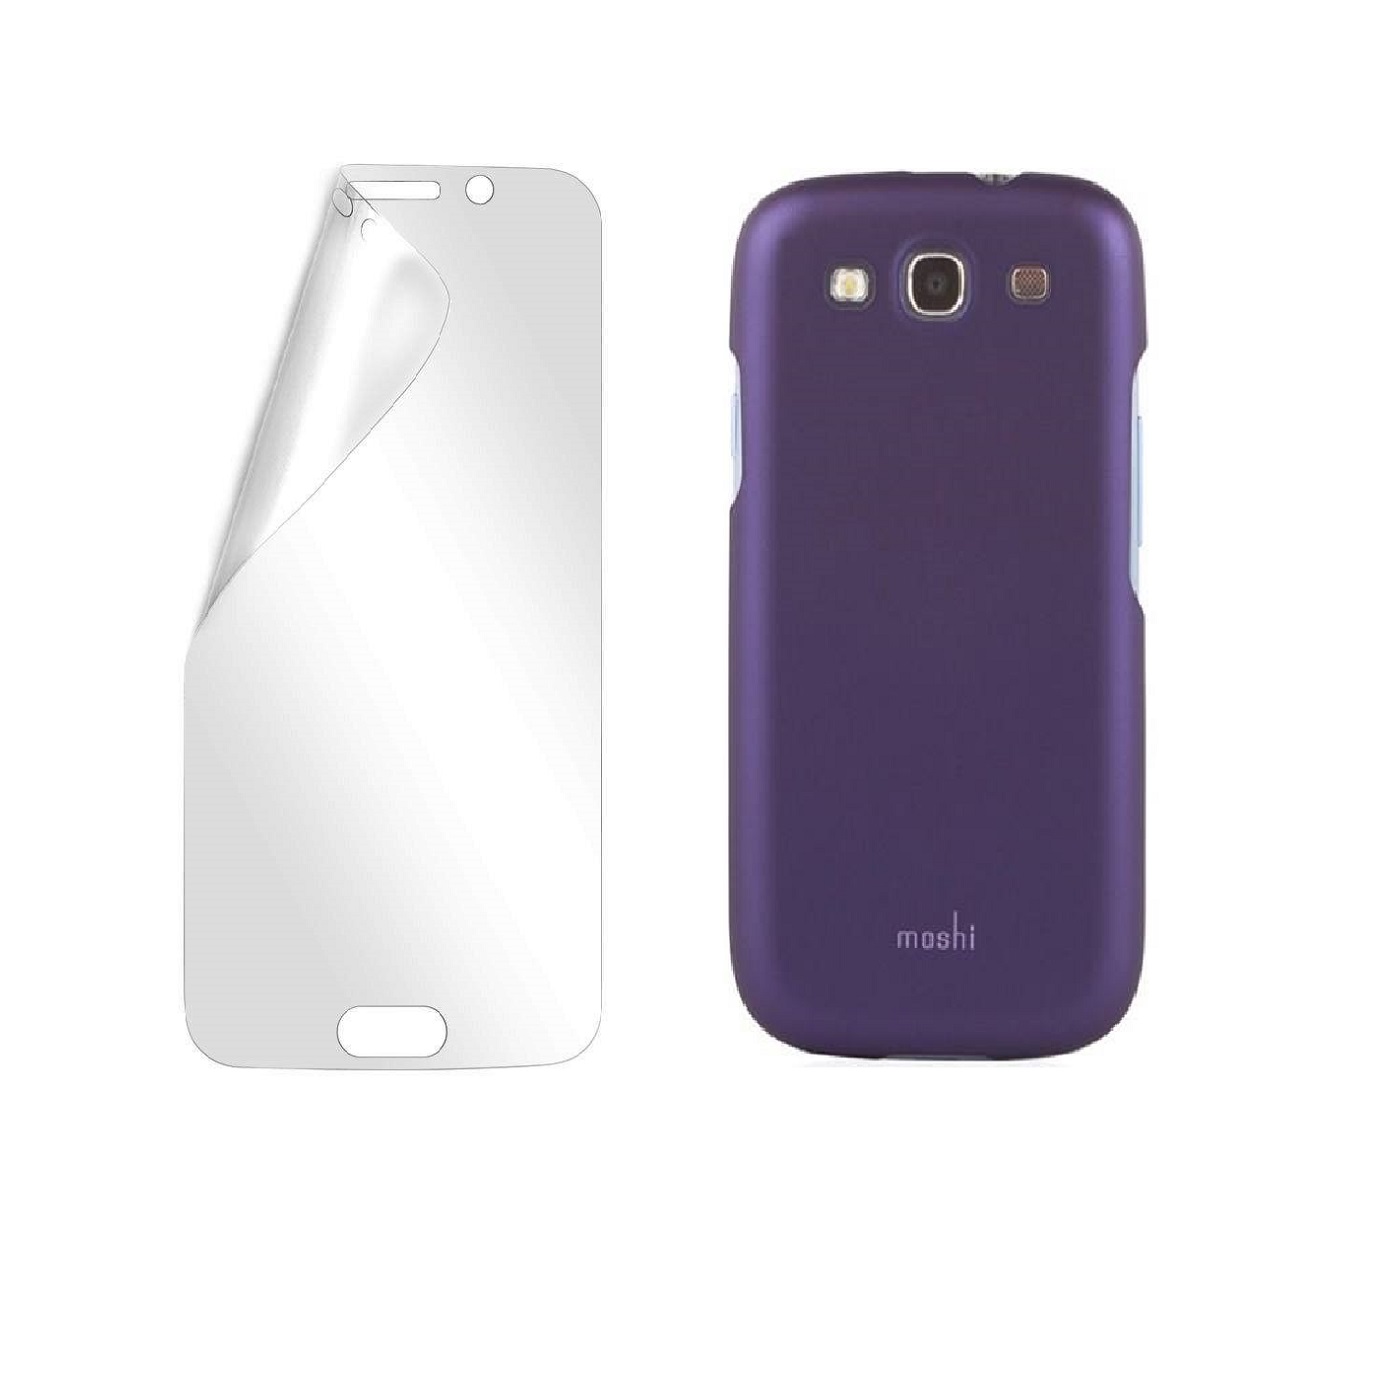 کاور موشی مدل Mazi مناسب برای گوشی موبایل اپل Iphone 6/6s به همراه محافظ صفحه نمایش